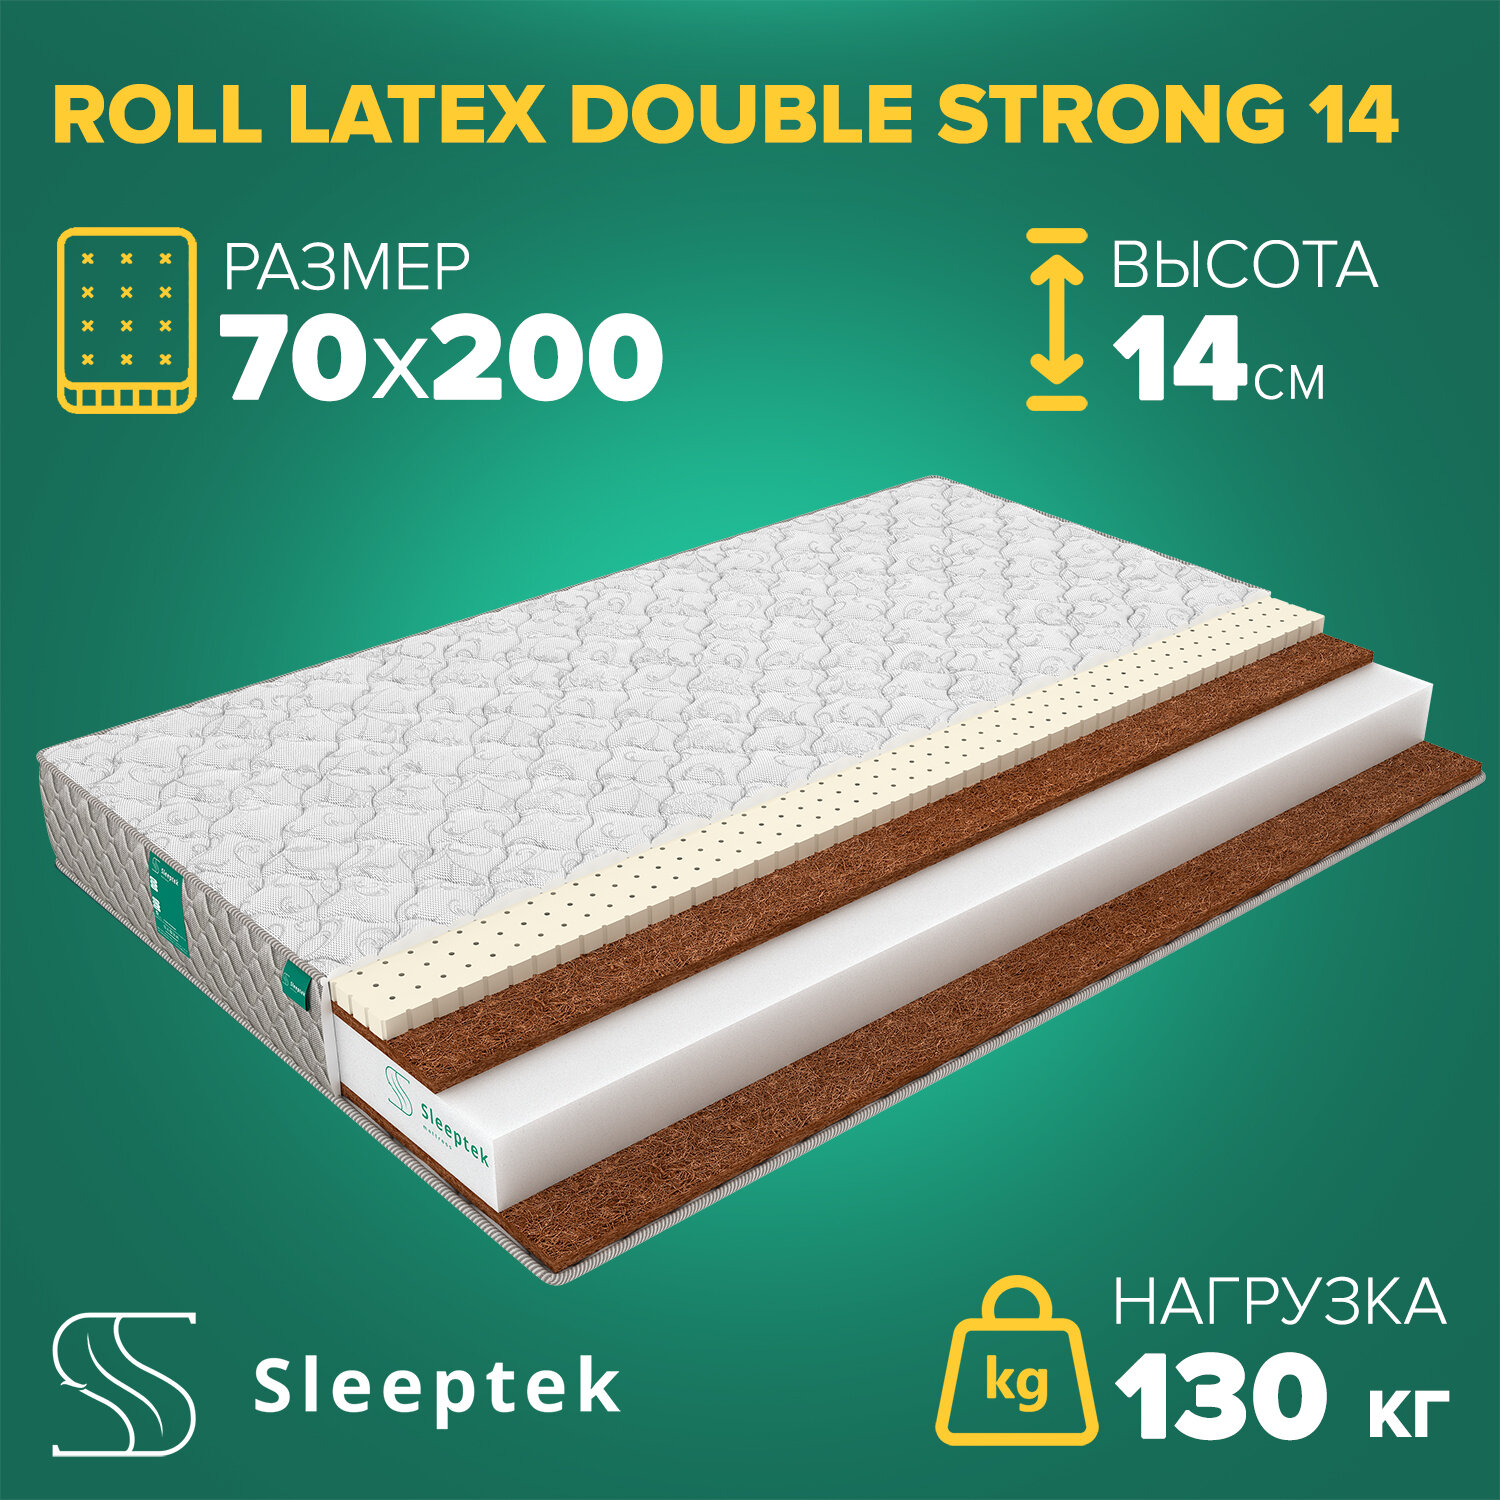 Матрас Sleeptek Roll Latex DoubleStrong 14 70х200